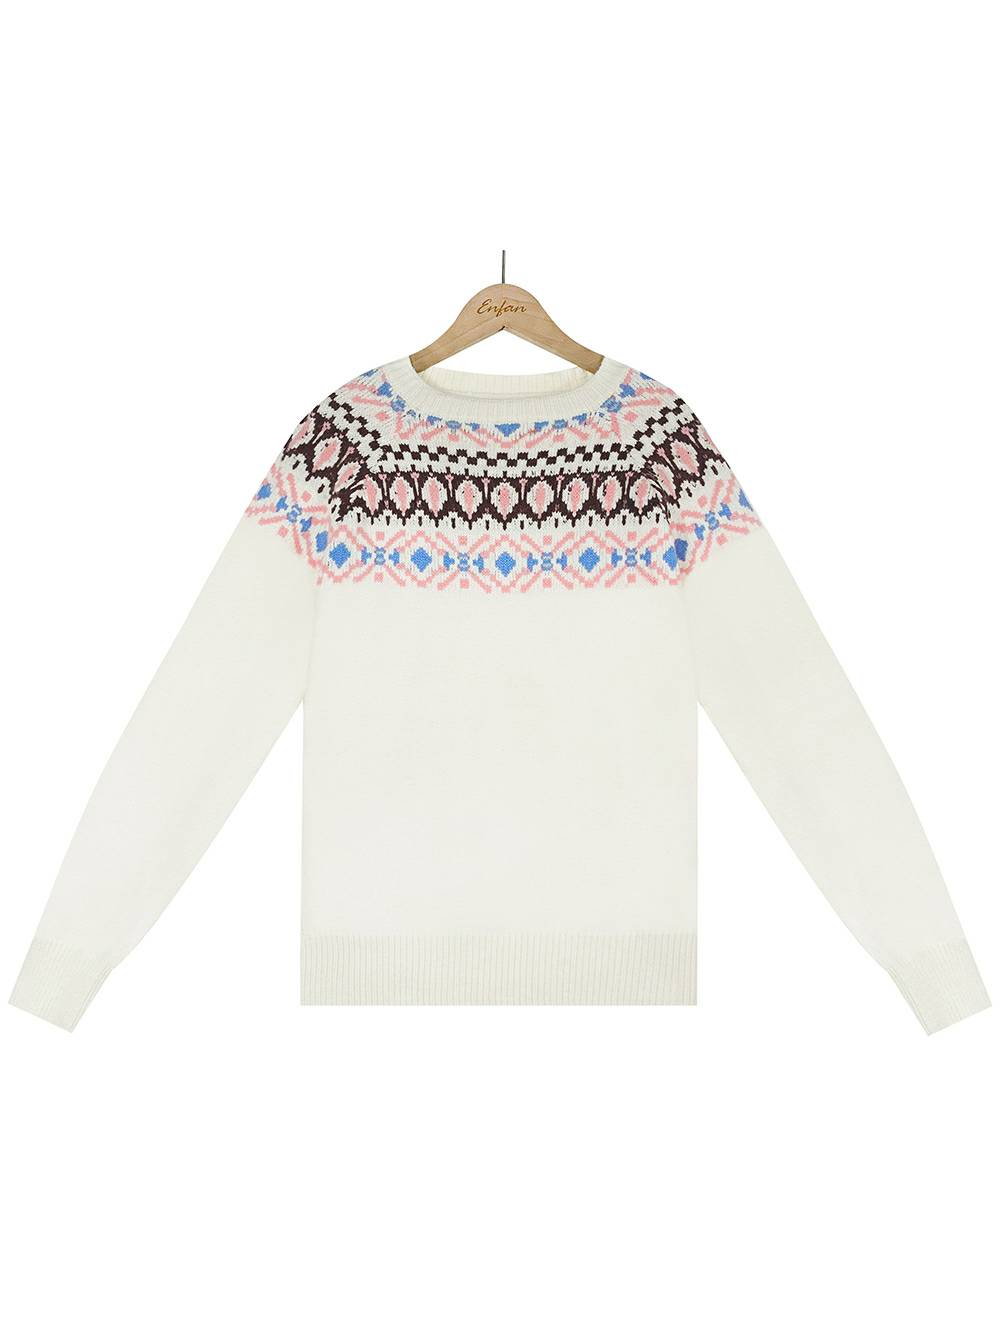 Dzianinowy sweter z haftowanymi blokami kolorów